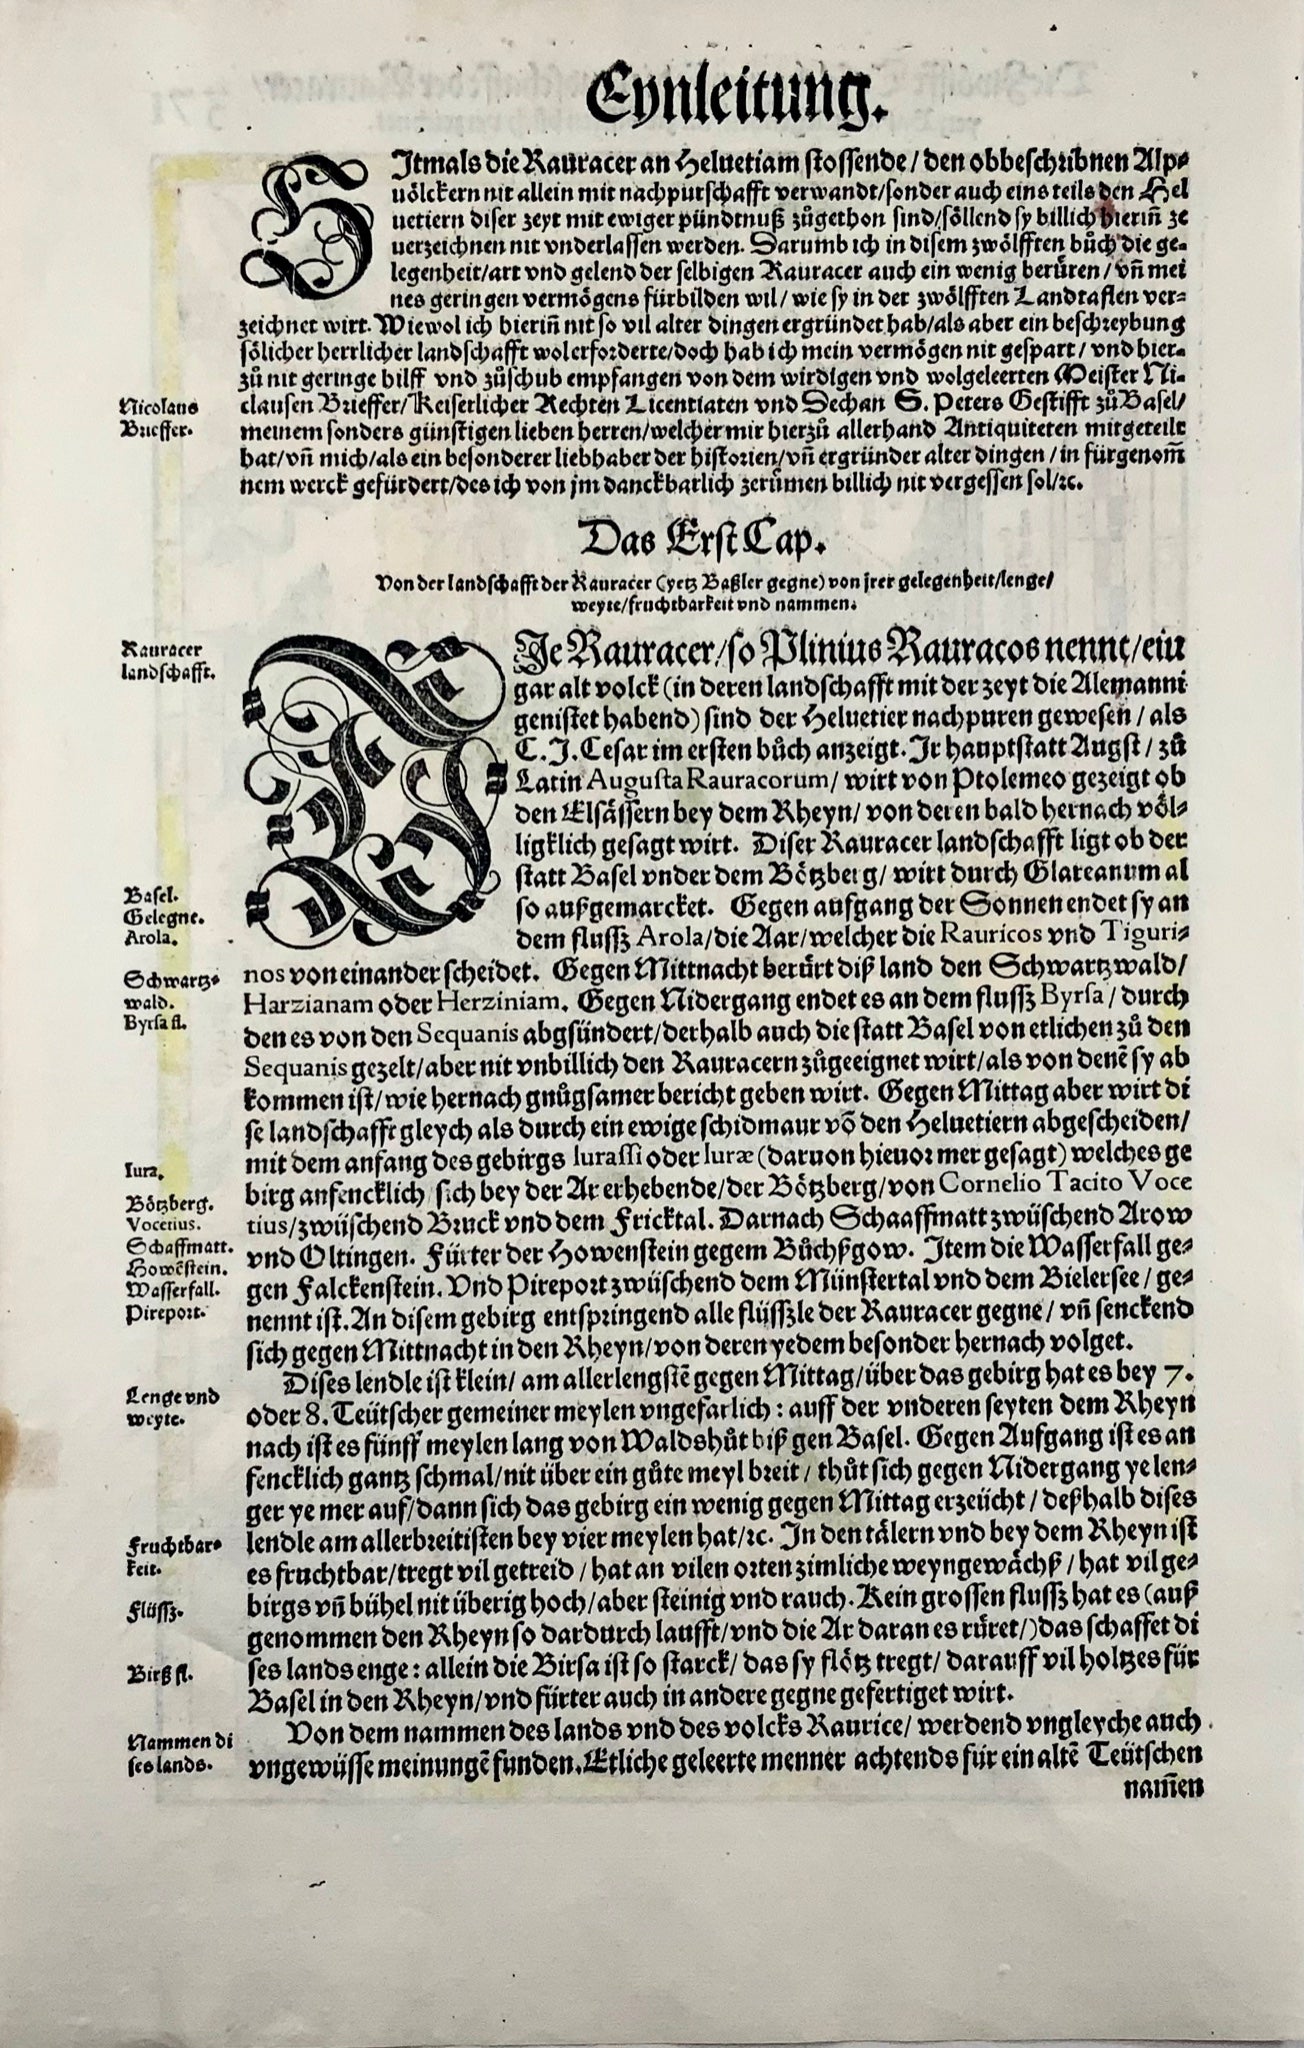 1548 Jean. Stumpf, Rhin, Allemagne, Suisse, carte gravée sur bois folio